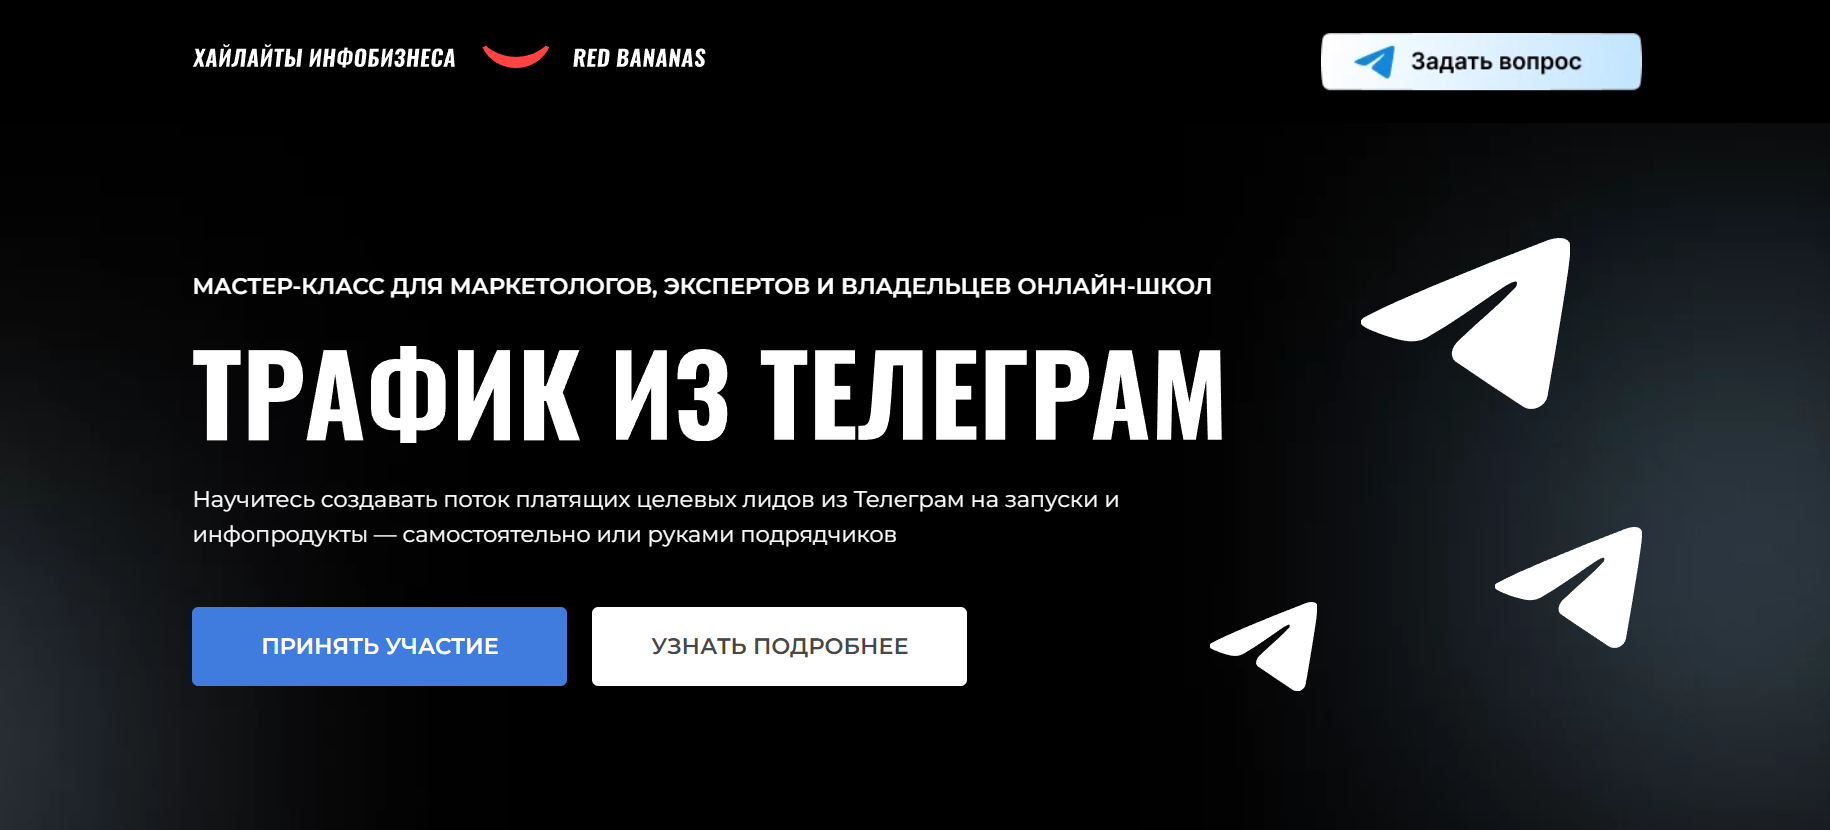 Россия мама опять реклама из телеграмма скачать песню фото 22